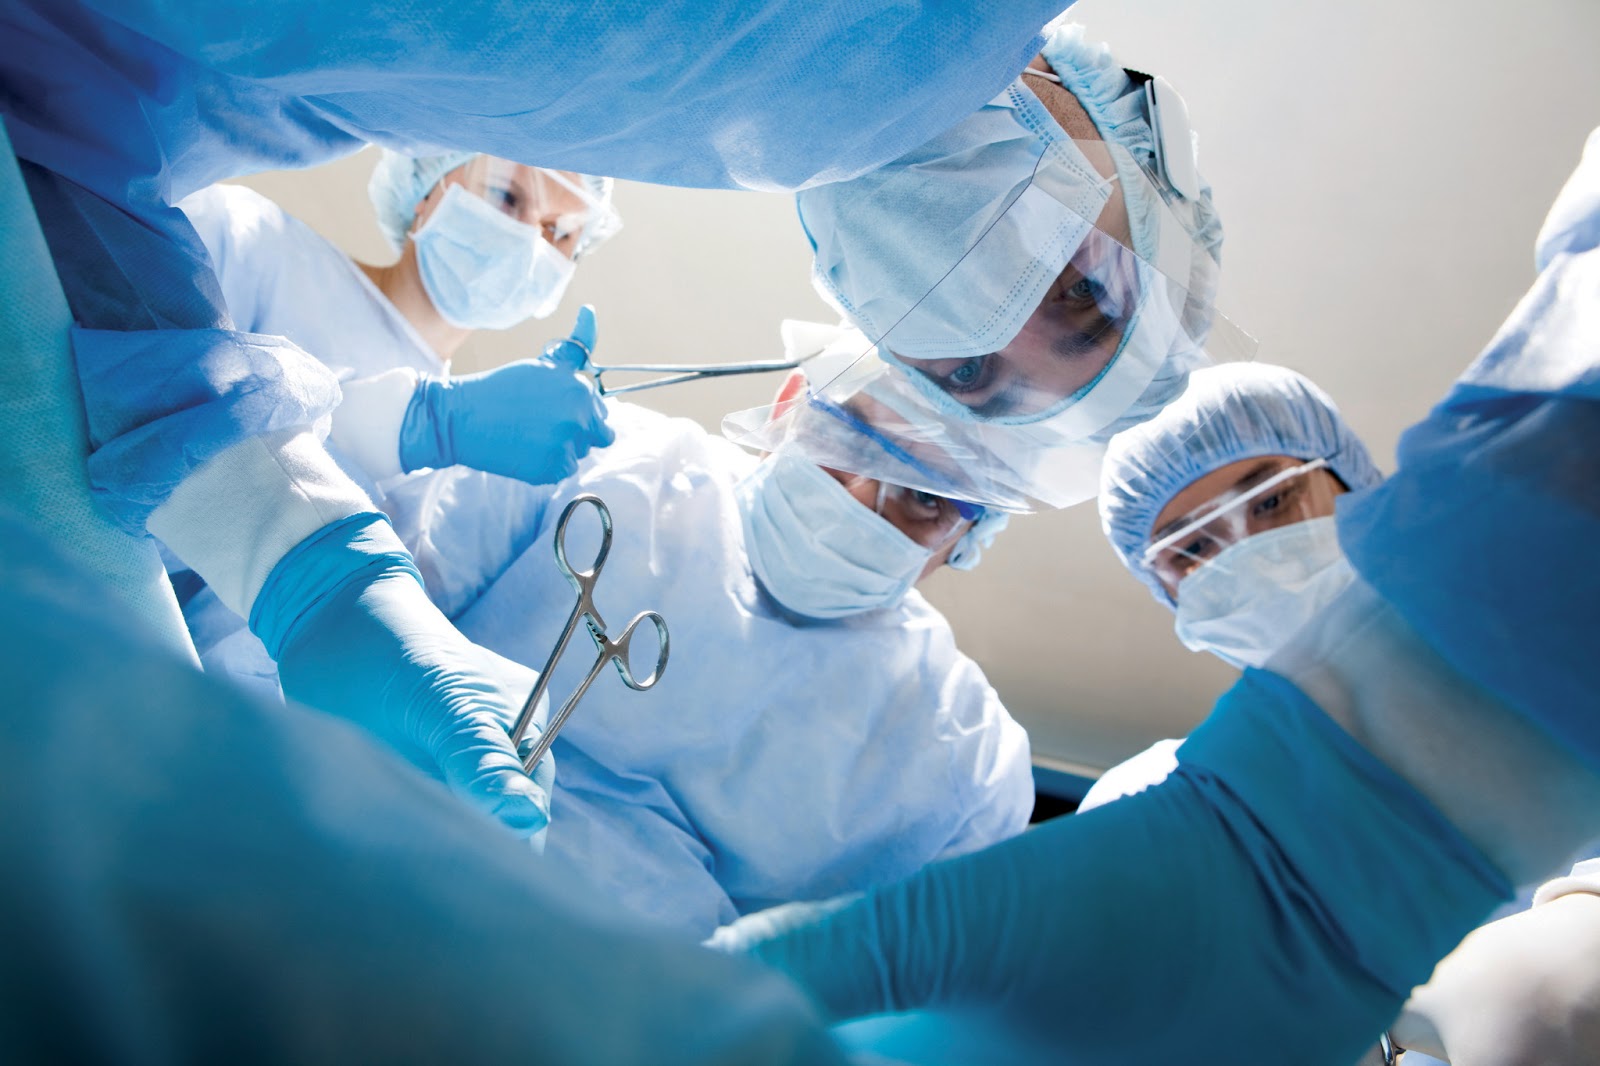 Σε λειτουργία η νέα χειρουργική πτέρυγα του νοσοκομείου Λασιθίου